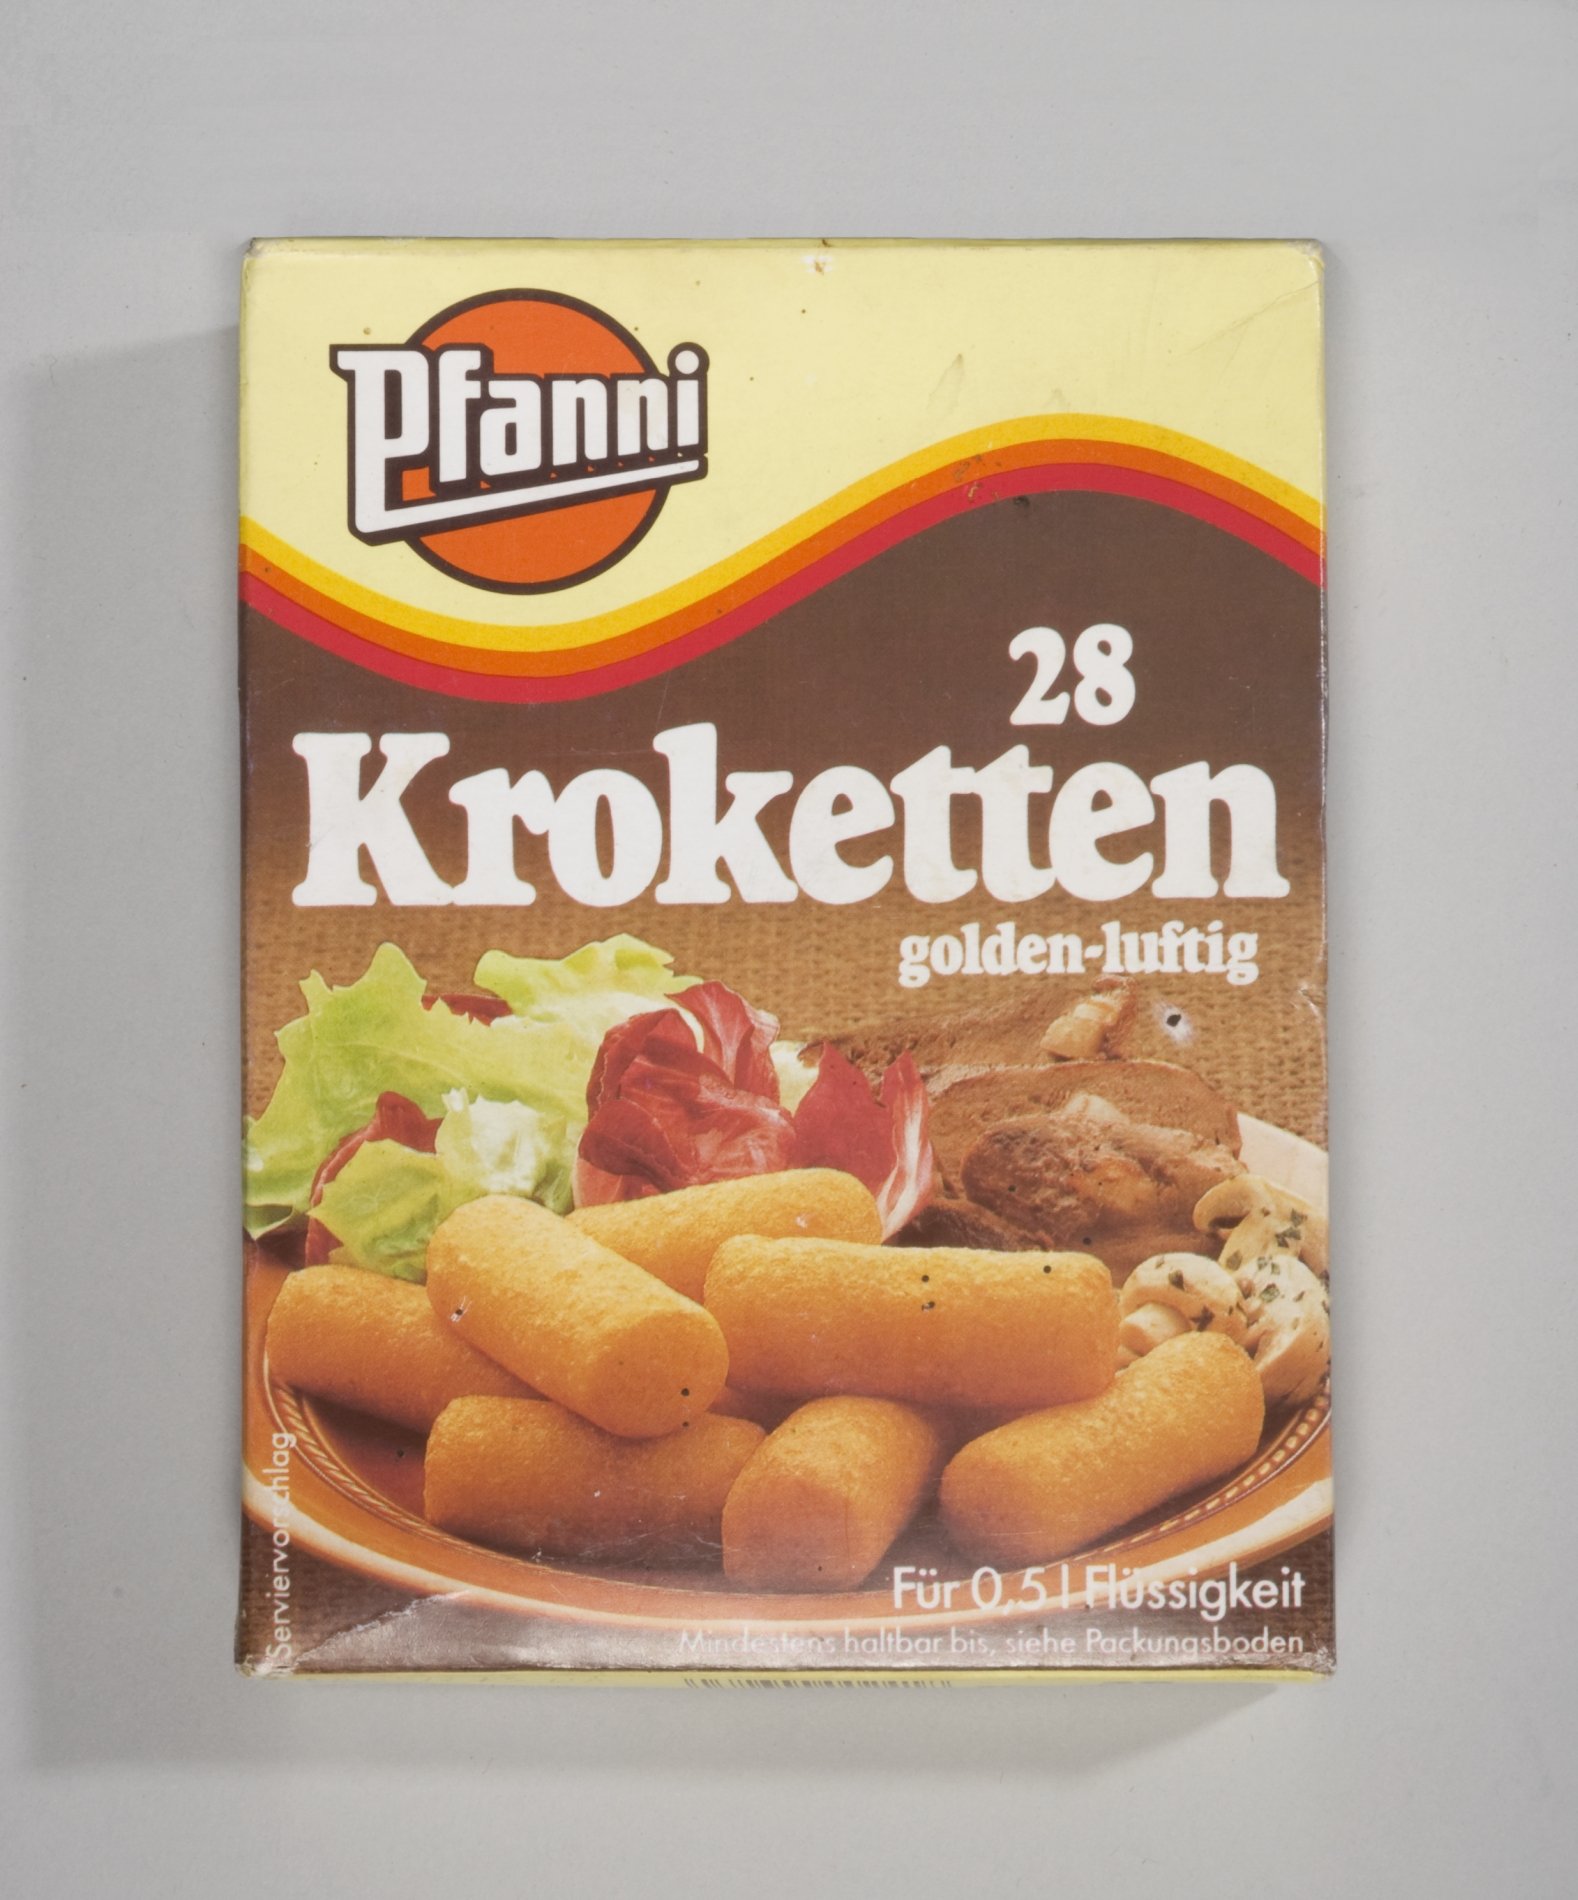 Verpackung Kroketten der Firma "Pfanni" (Stiftung Domäne Dahlem - Landgut und Museum, Weiternutzung nur mit Genehmigung des Museums CC BY-NC-SA)